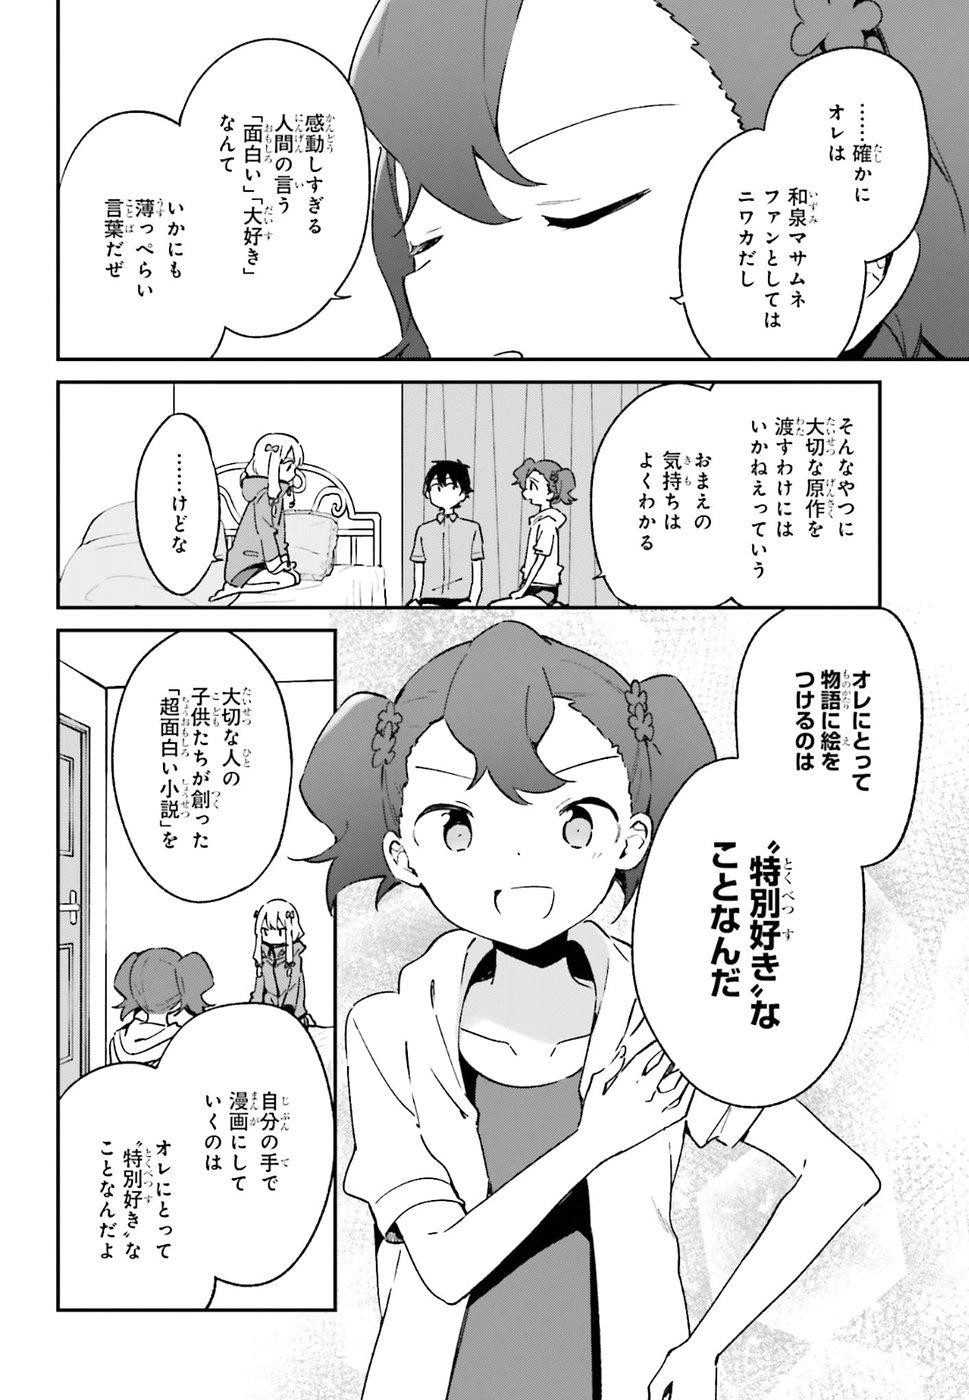 Ero Manga Sensei - Chapter 49 - Page 26